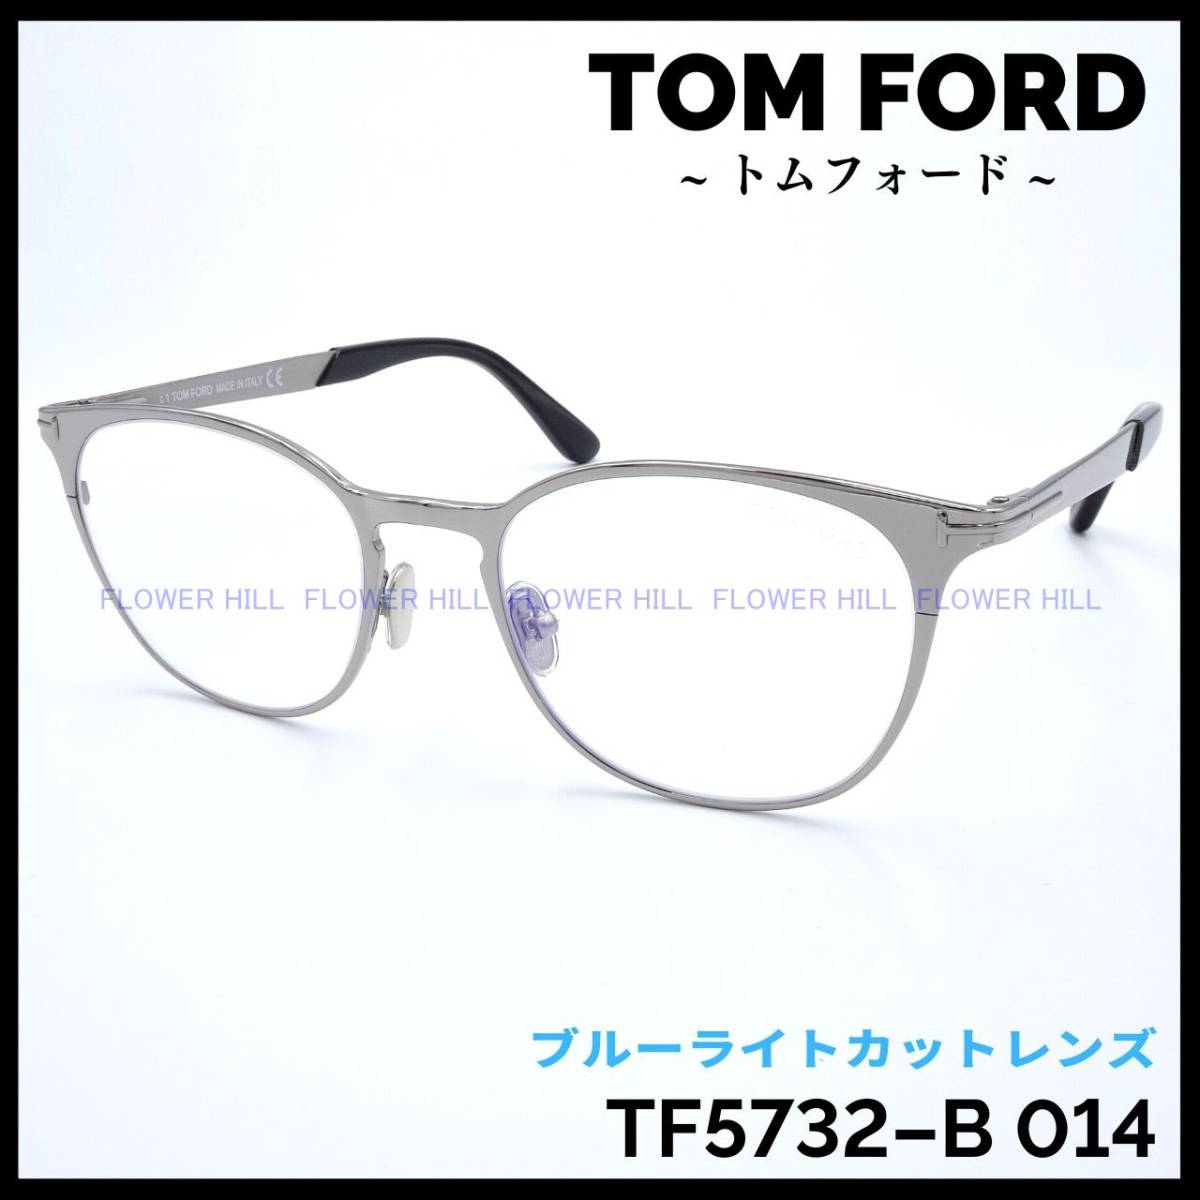 【新品・送料無料】トムフォード TOM FORD TF5732-B 014 メガネ フレーム メタルフレーム シルバー ブルーライトカットレンズ 眼鏡 高級